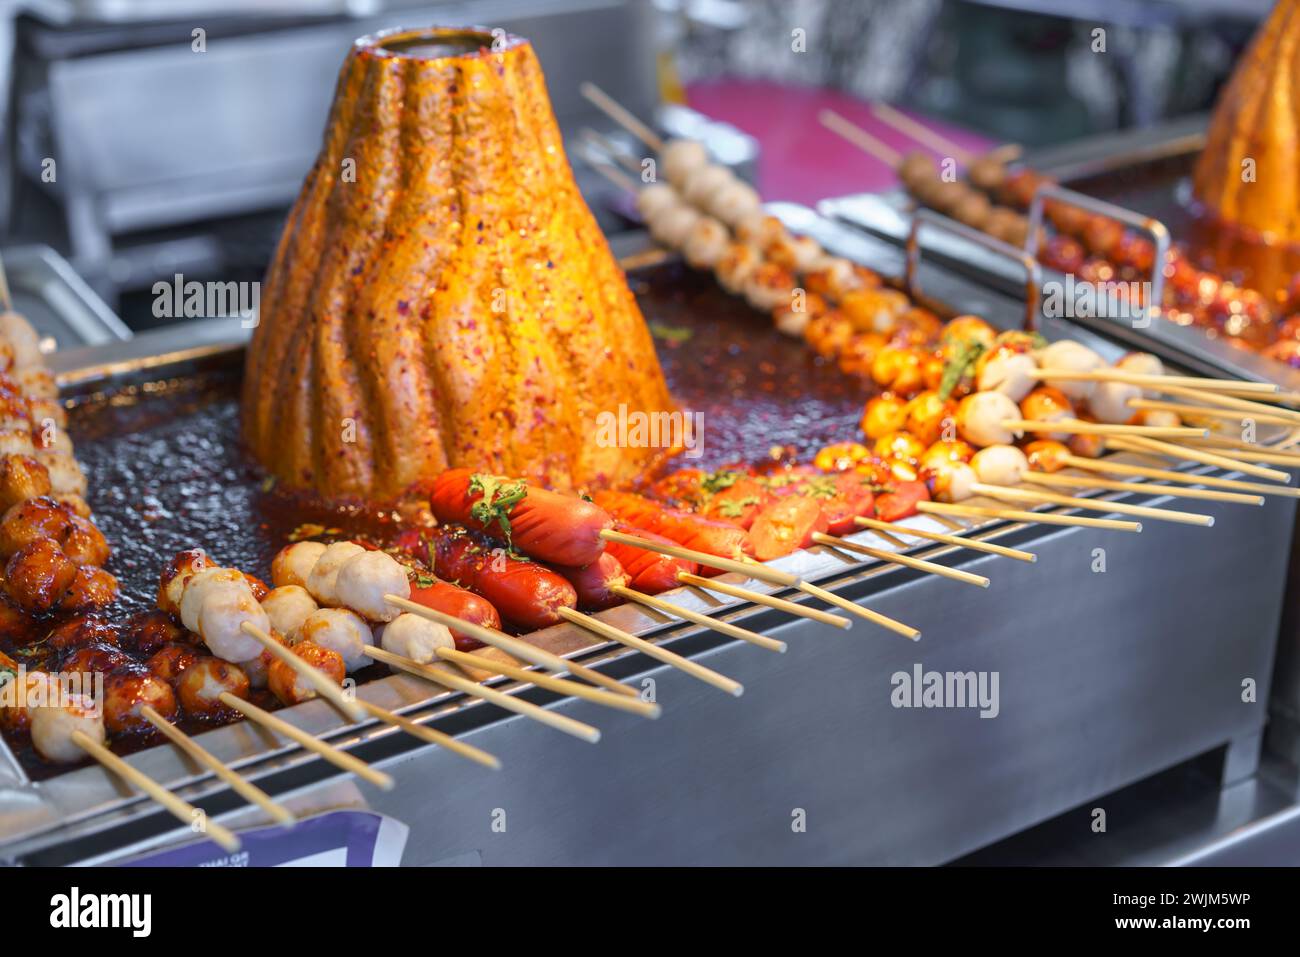 Boule de porc en brochettes comprenant des saucisses cuites sur un grill chaud, arrosées d'une sauce épicée, dans un marché alimentaire de rue. Banque D'Images